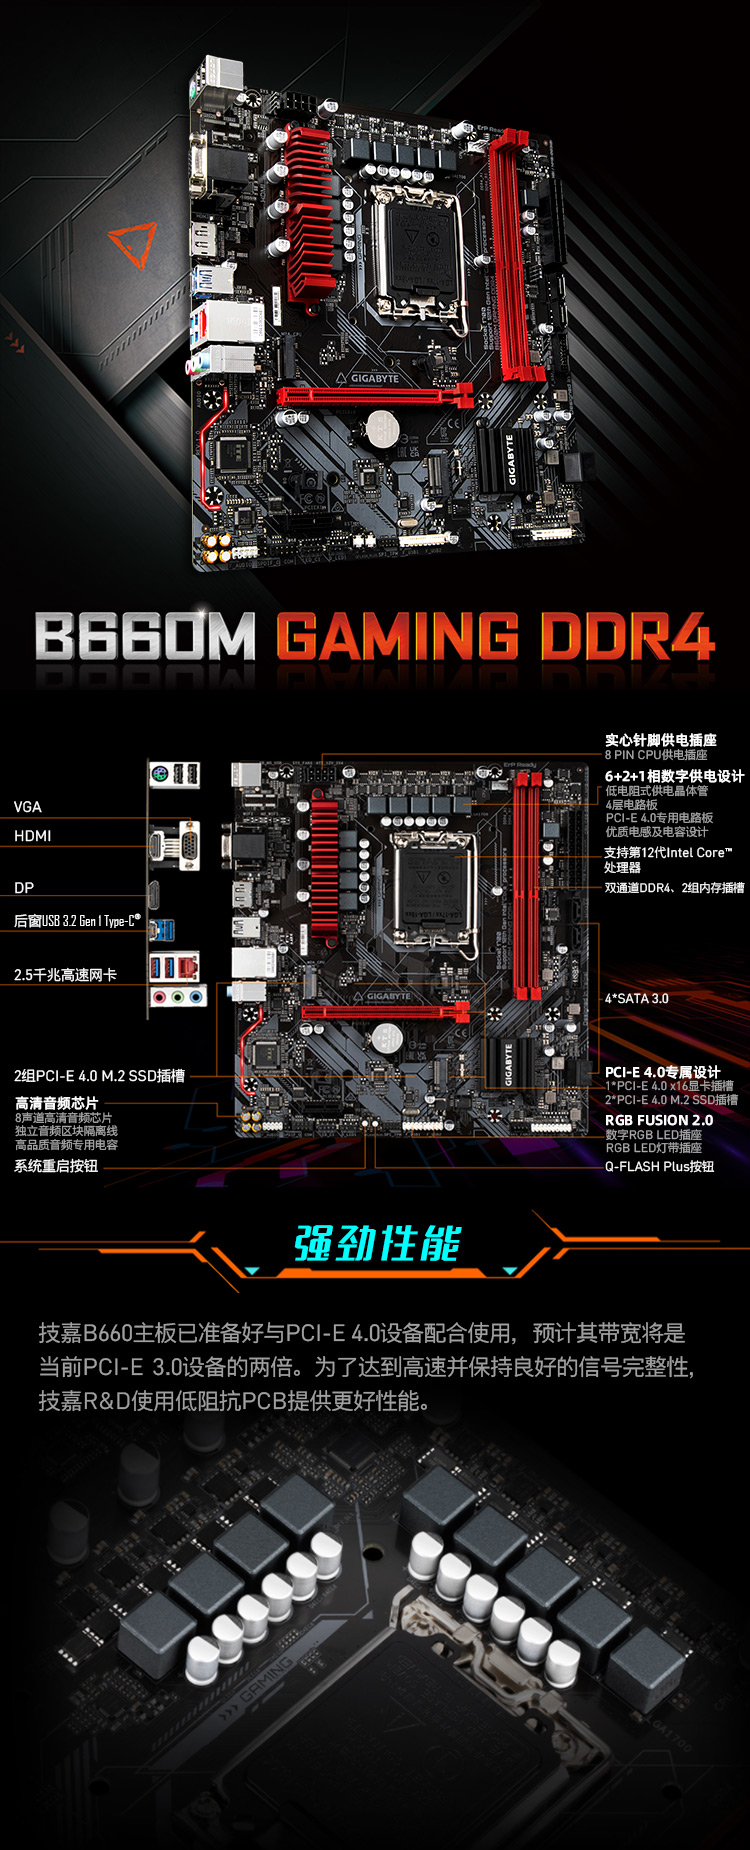 全新 B660 主板搭配 DDR4 内存，提升游戏体验与工作效率的完美选择  第9张